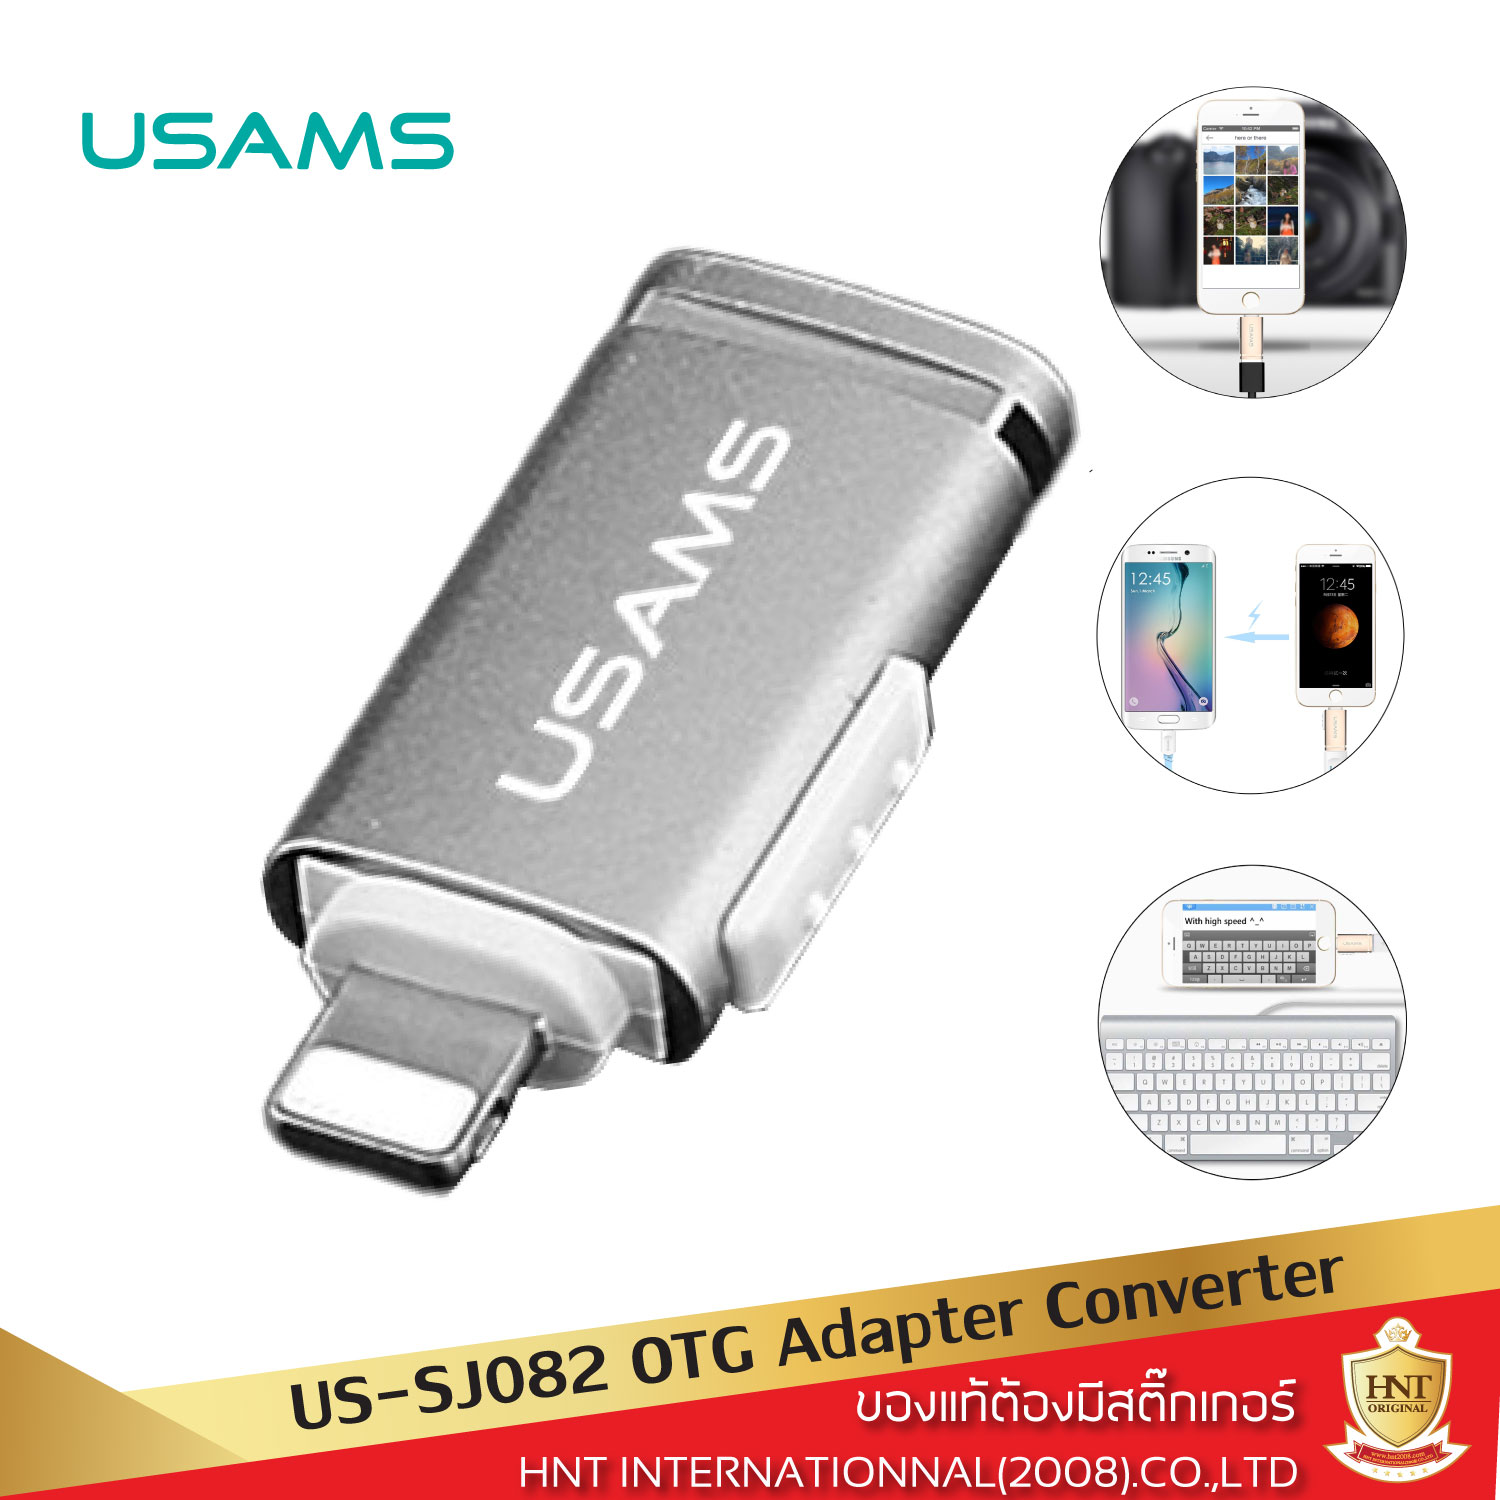 หัวแปลง Usams รุ่น US-SJ082 OTG Adapter เชื่อมต่อ Lightning to USB สำหรับการรับส่งข้อมูล ส่งรูปภาพและวีดีโอจากกล้องสู่มือถือ และเสริมการใช้งานอื่นๆ อุปกรณ์แปลงสำหรับอุปกรณ์พอร์ต Lightning HNT รับประกันการใช้งาน 6 เดือน